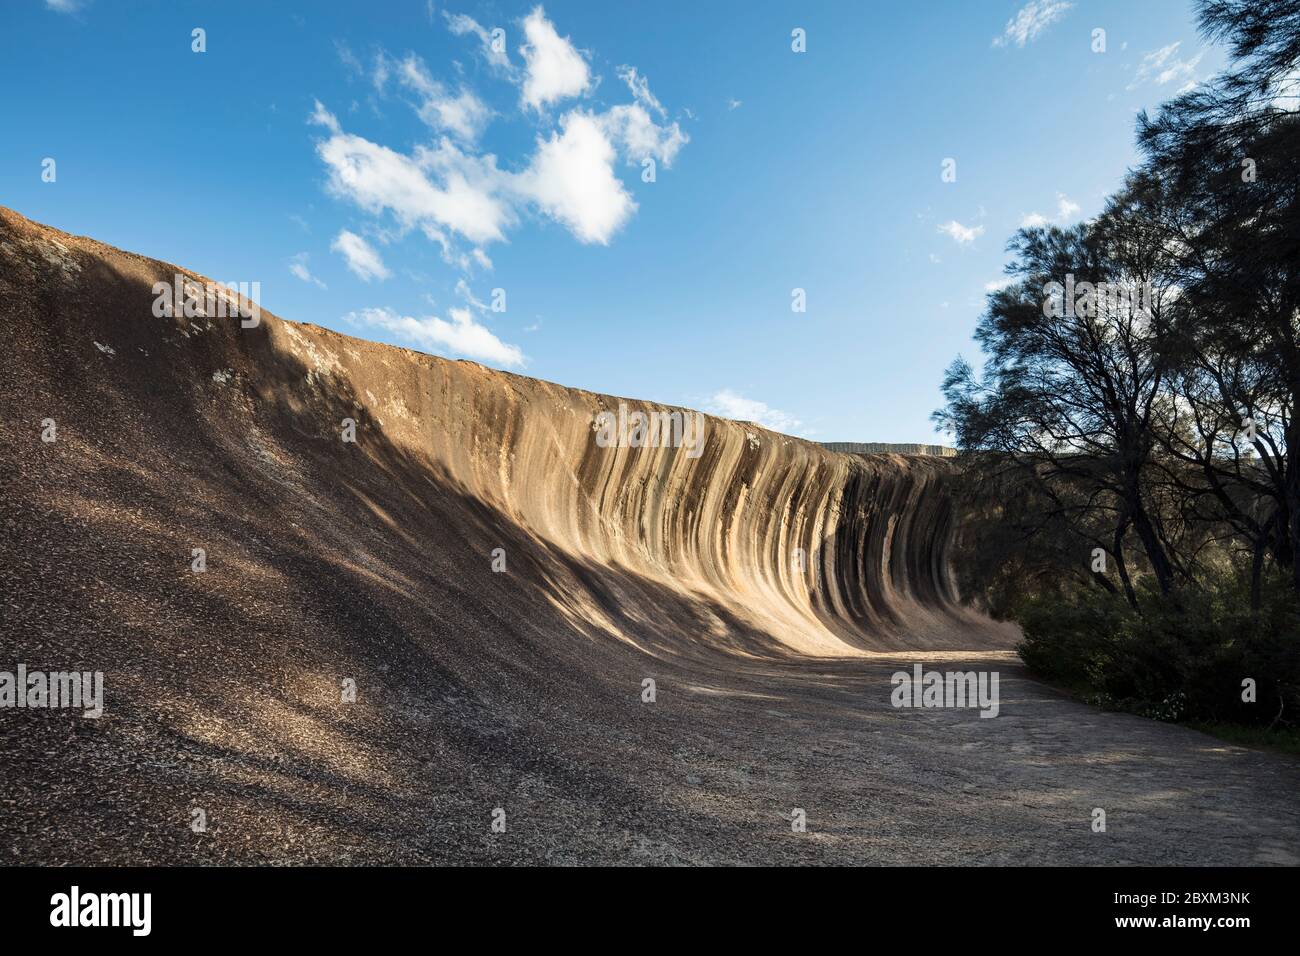 Wave Rock, eine 15 Meter hohe natürliche Felsformation, die wie eine hohe brechende Meereswelle geformt ist und sich in Hyden in Westaustralien befindet Stockfoto